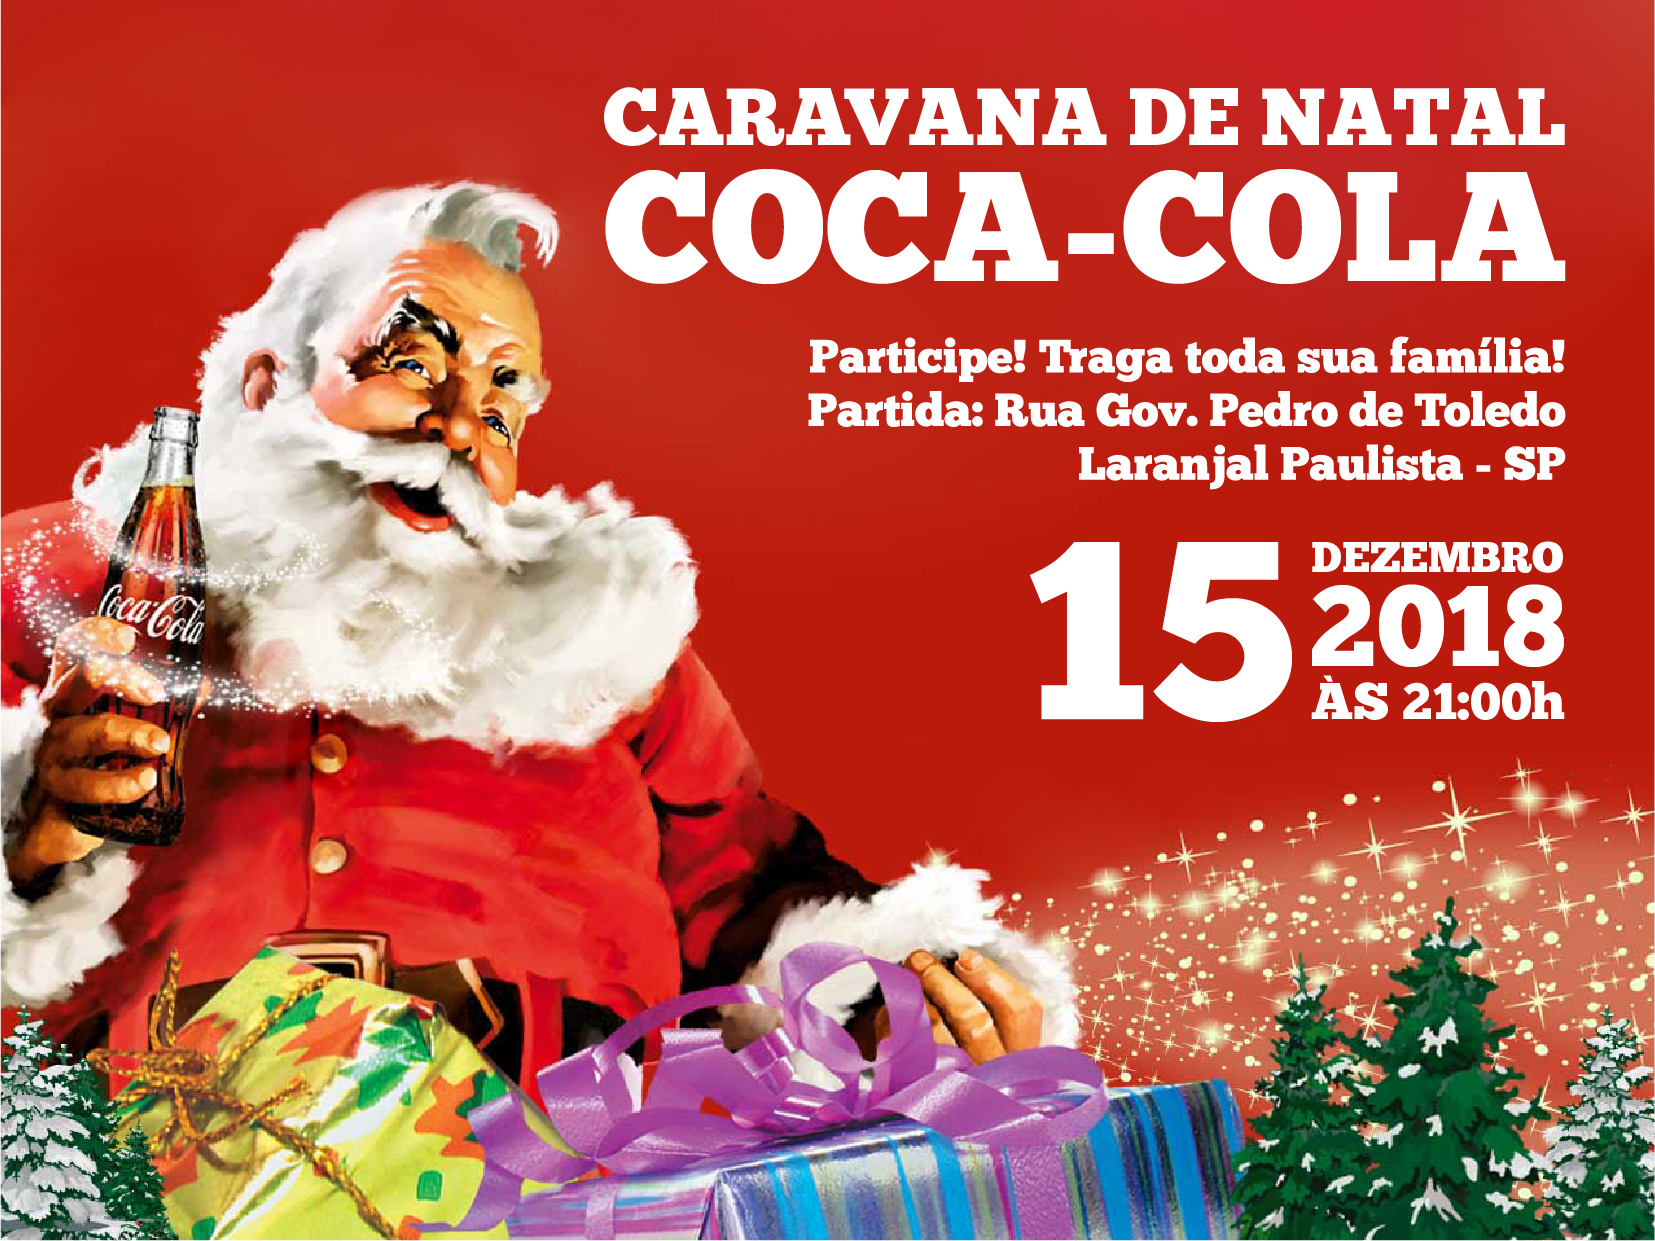 Caravana de Natal Coca-Cola foi um sucesso em Laranjal Paulista -  Prefeitura do Município de Laranjal Paulista